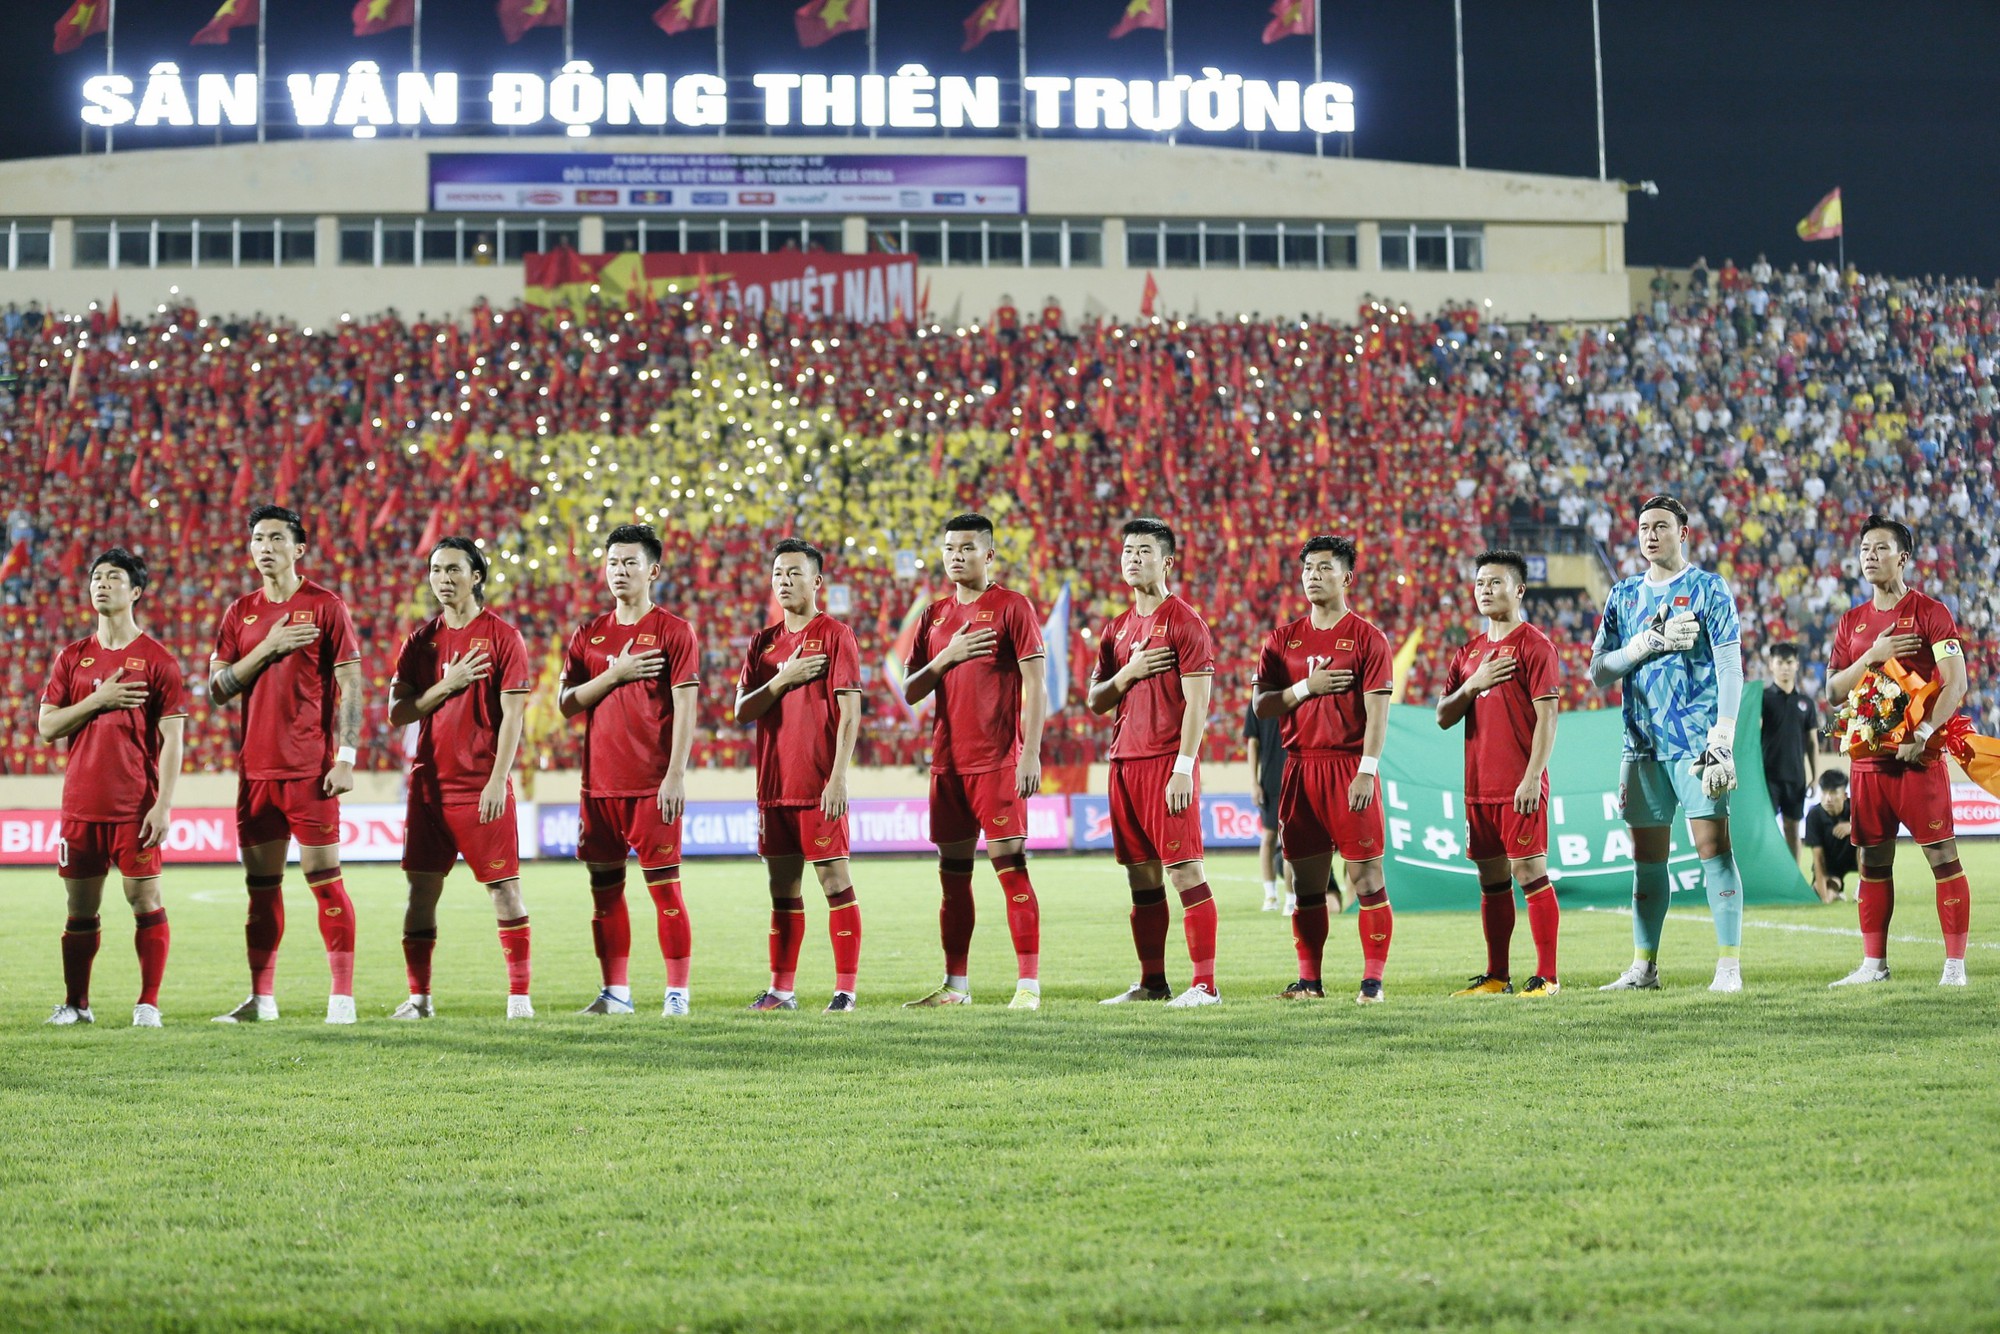 Đội tuyển Việt Nam đặt tay lên ngực trong lễ chào cờ trước trận thắng dội Syria 1-0